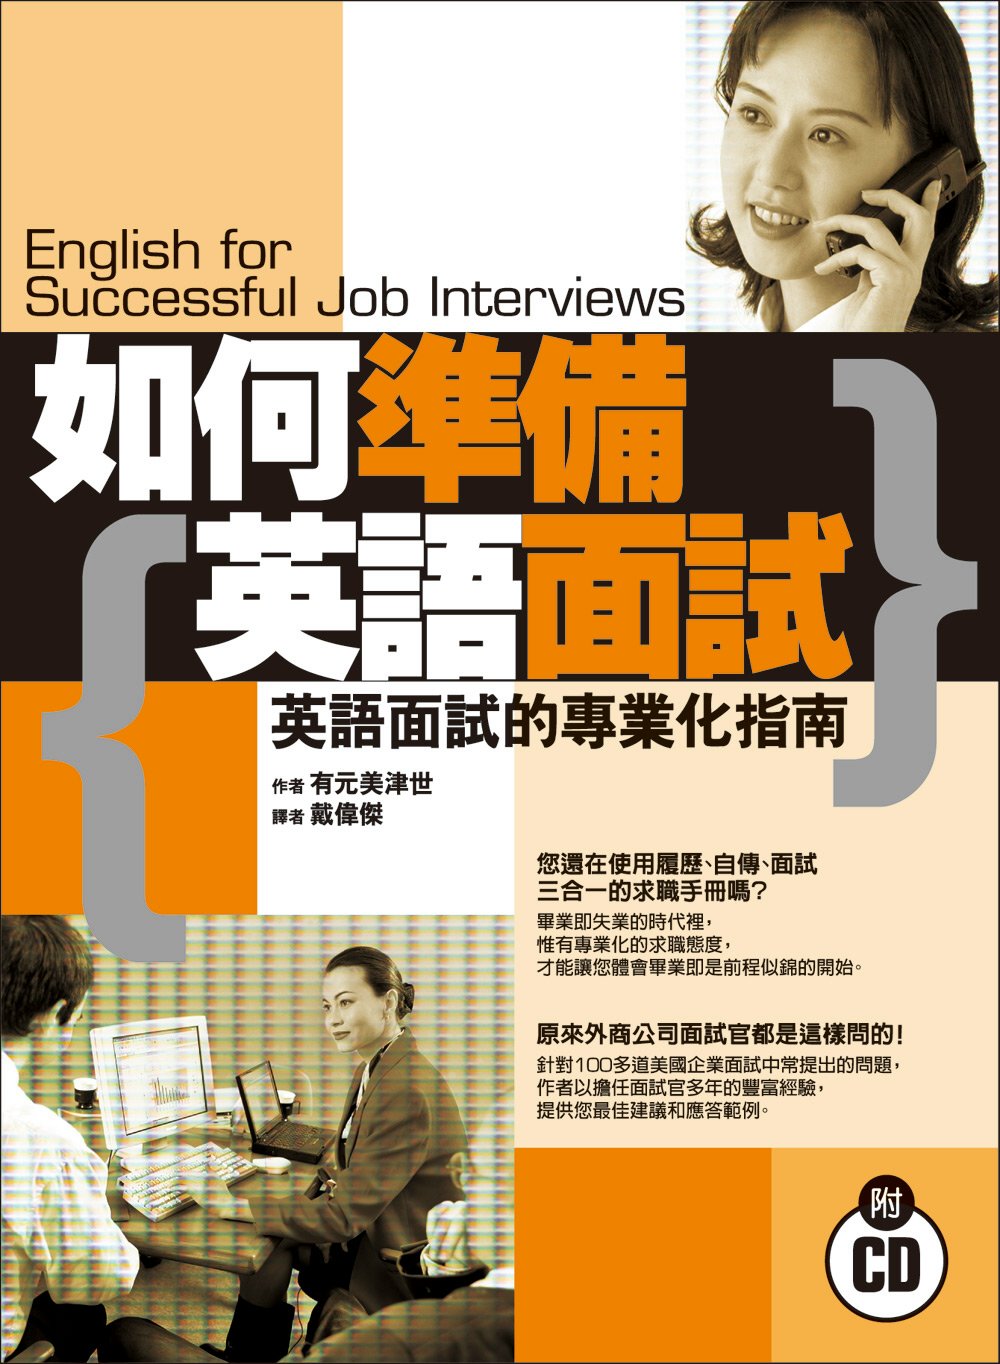 如何準備英語面試:英語面試的專業化指南